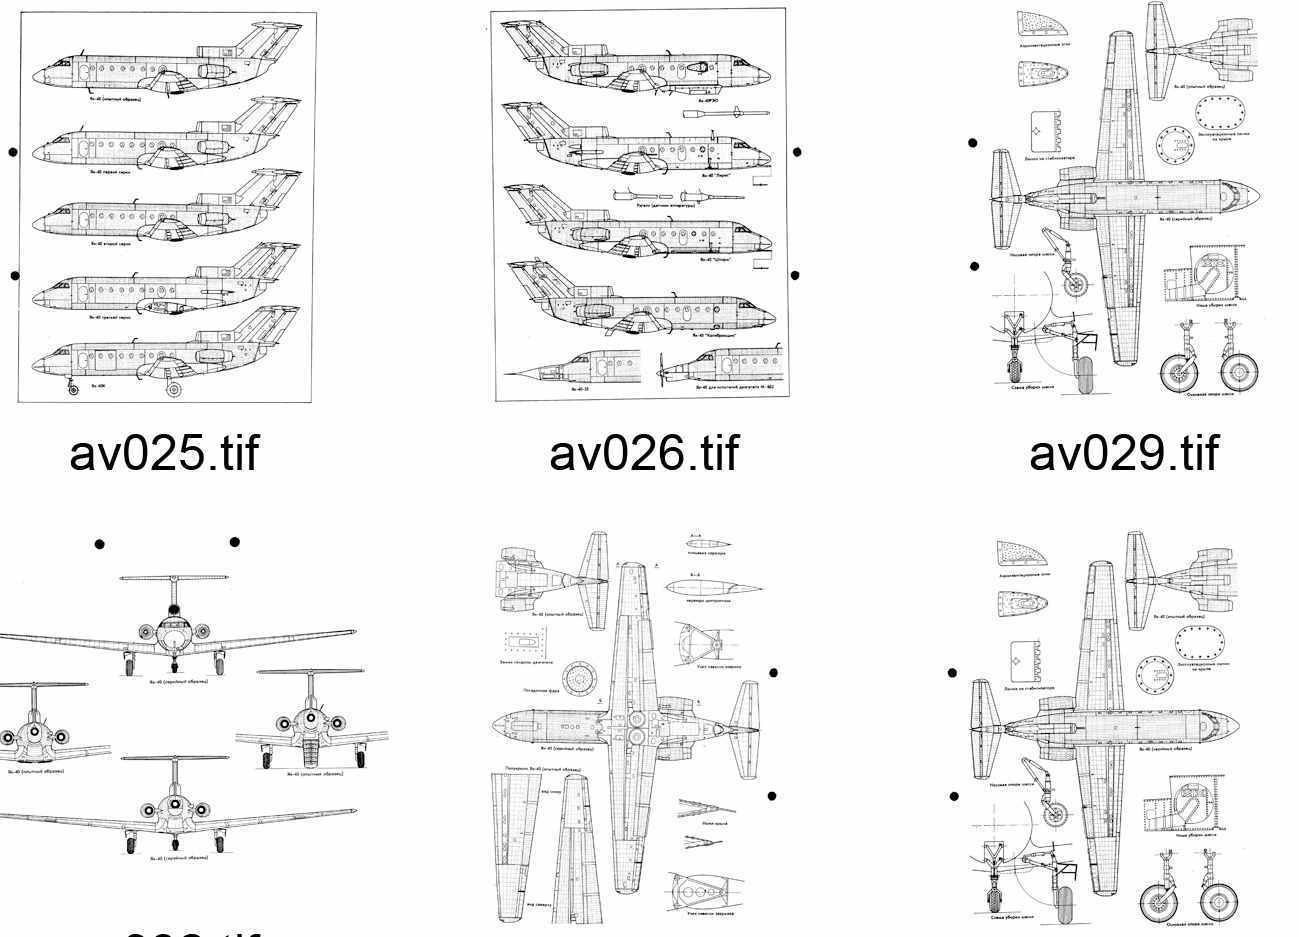 Самолёт як 42: схема и практическая аэродинамика, технические характеристики, расположение мест в салоне